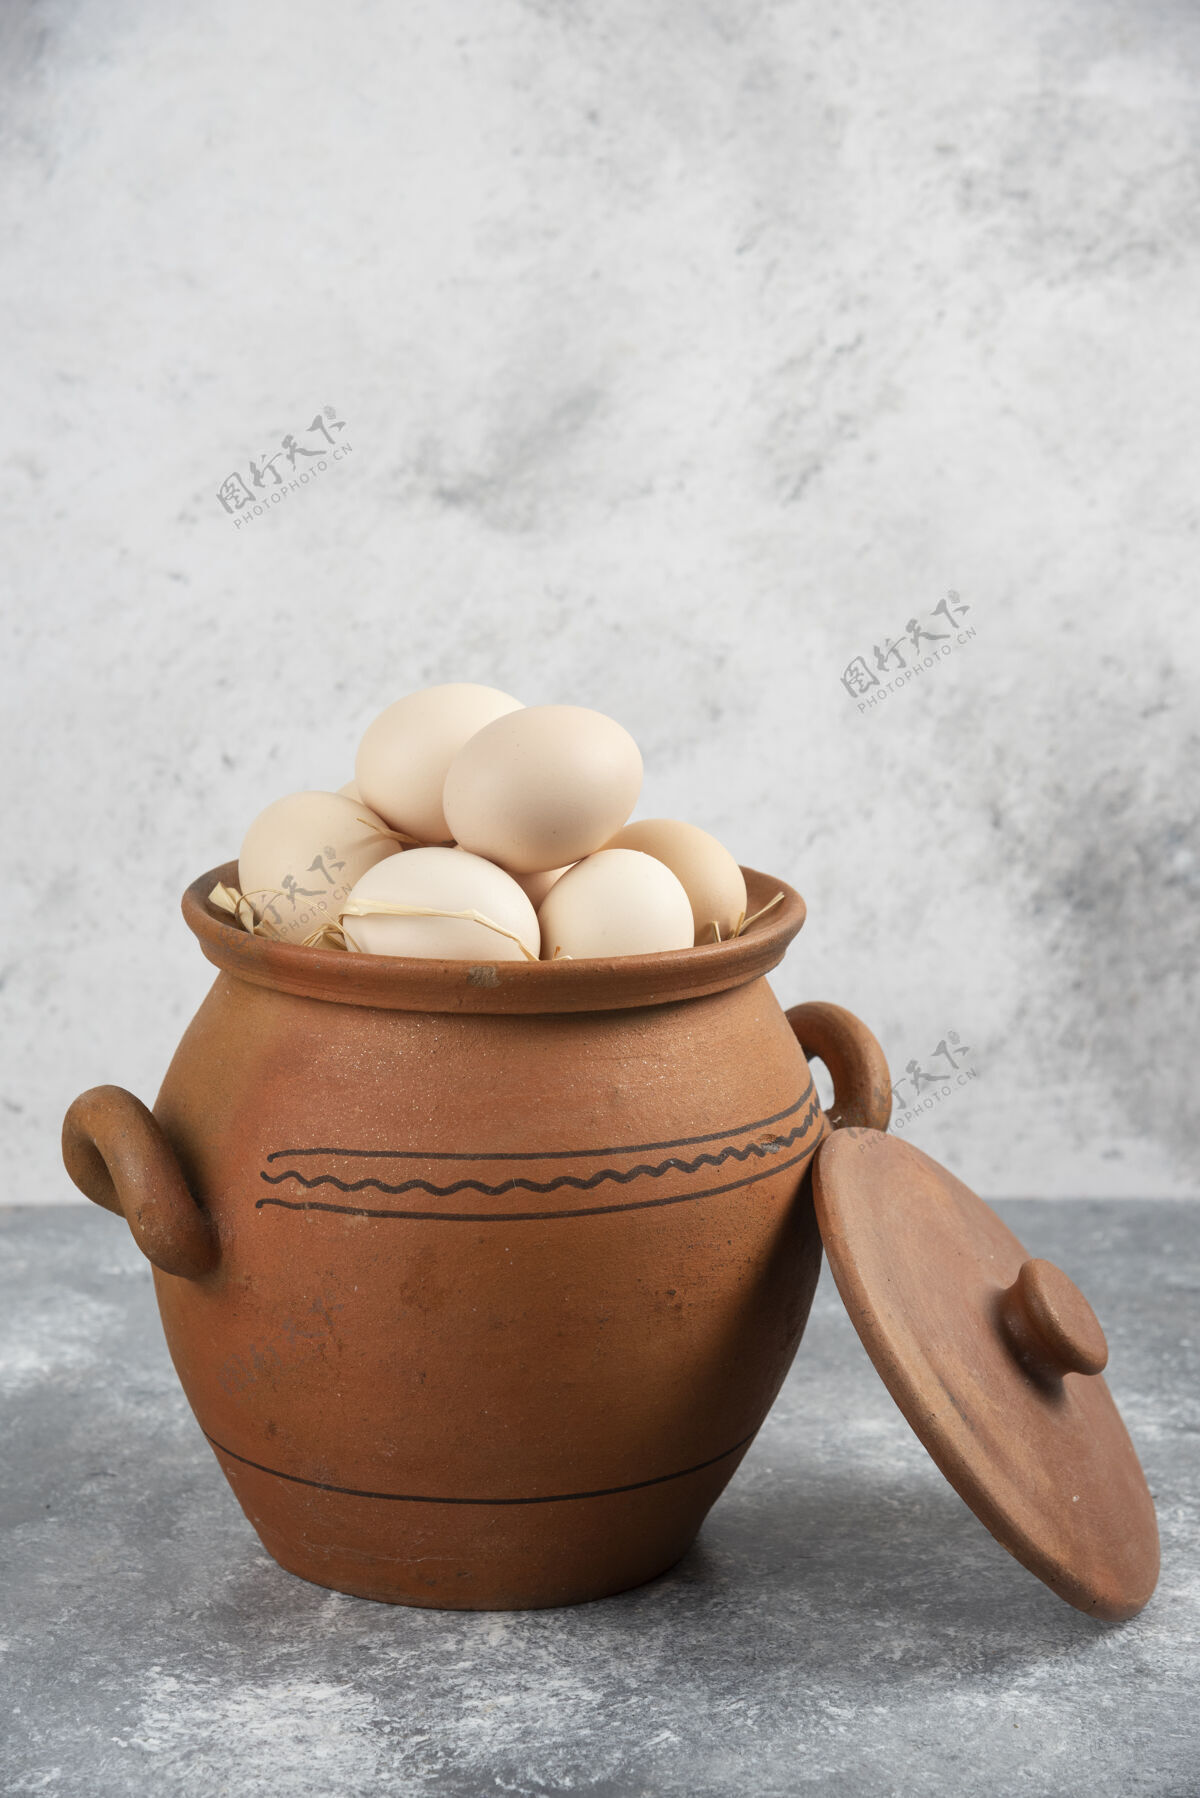 有机装满生鸡蛋的泥锅放在大理石上食品生的生的